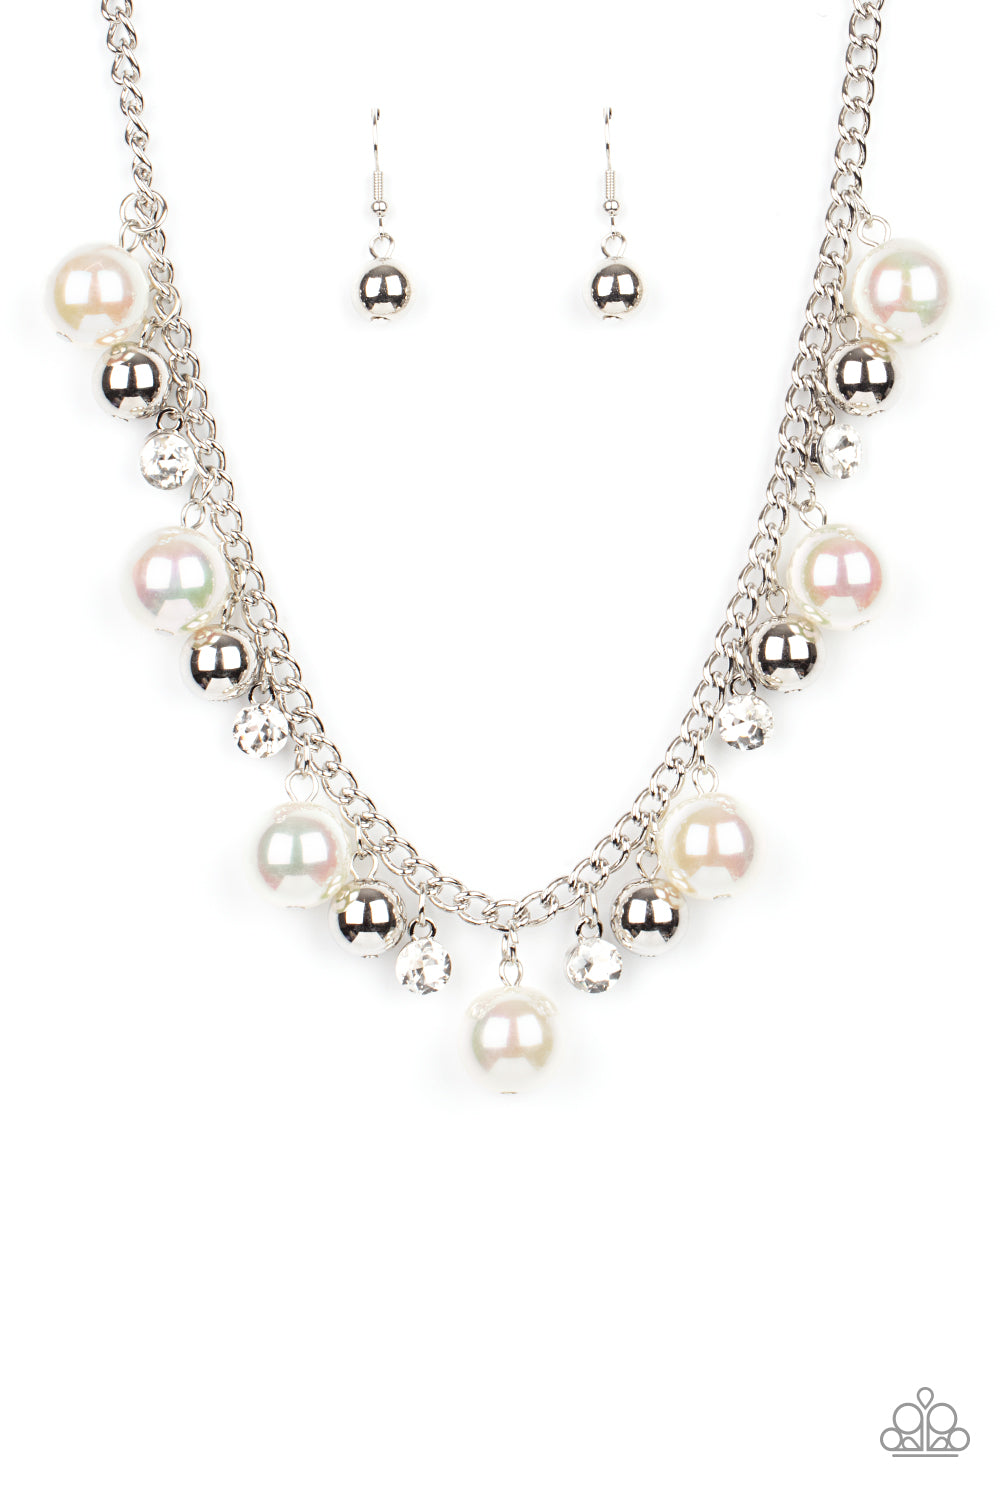 Galactic Gala - White Necklace Set - Princess Glam Shop